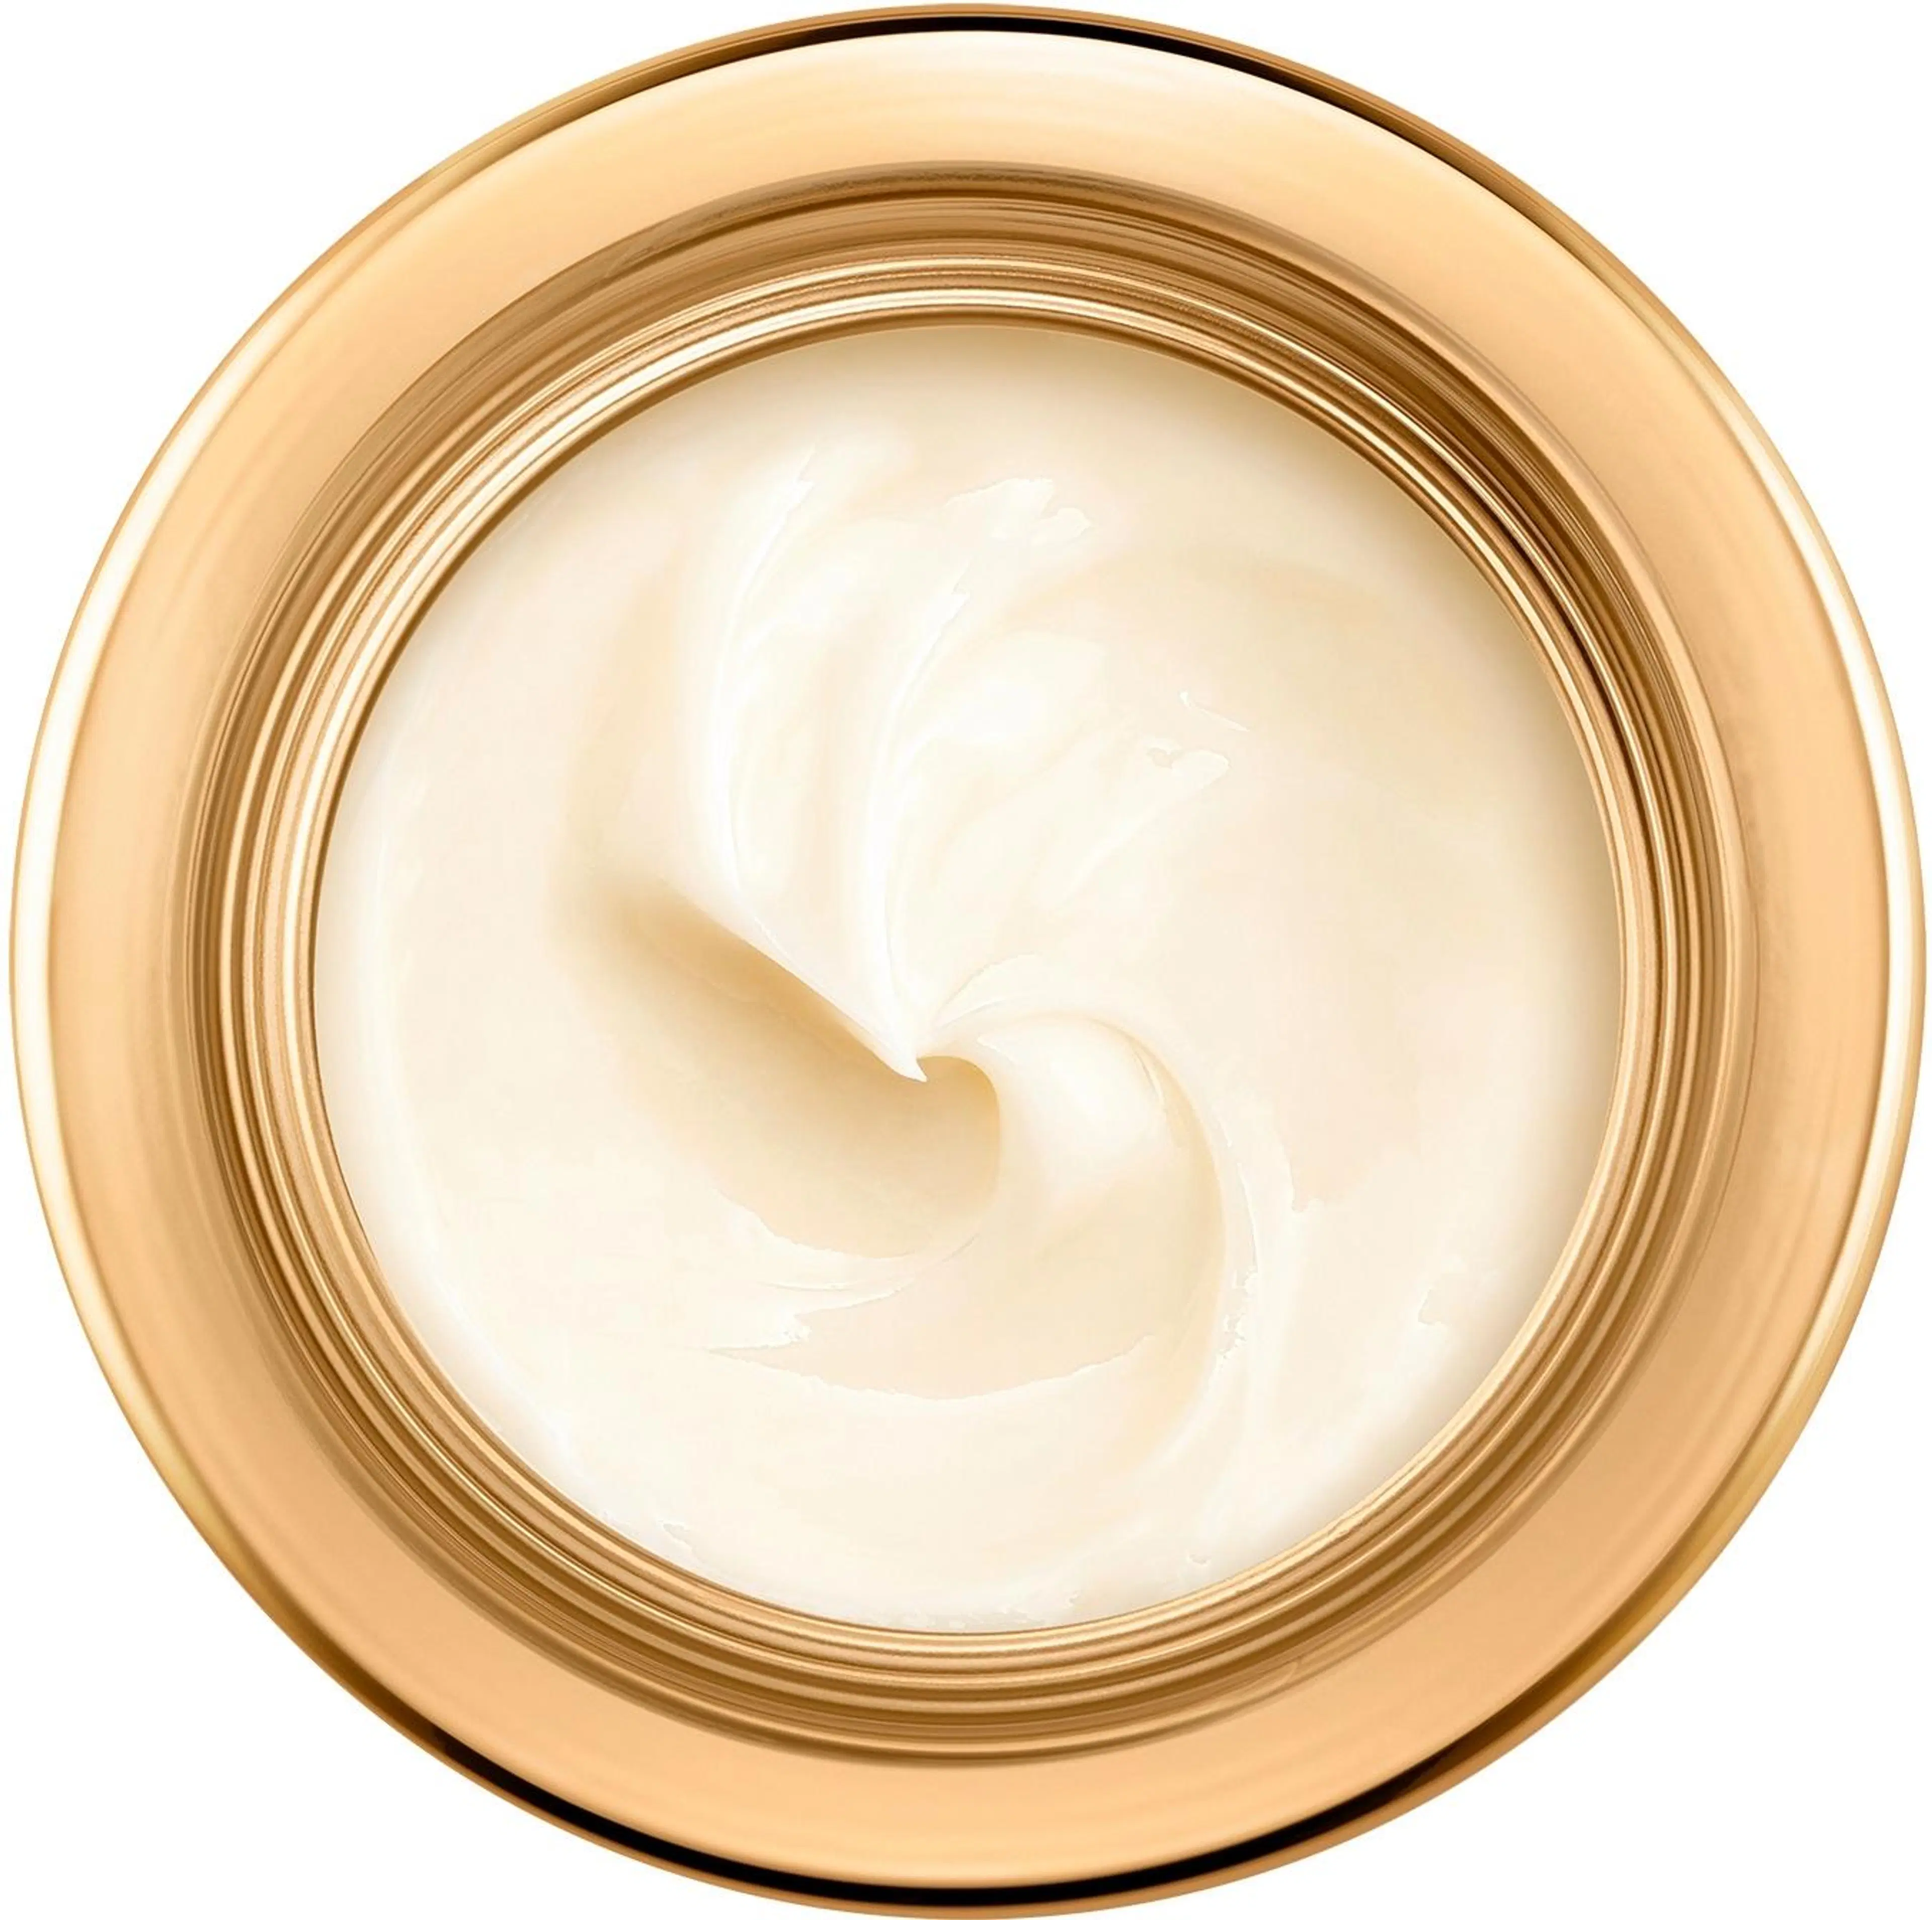 Lancôme Absolue Eye Cream silmänympärysvoide 20 ml